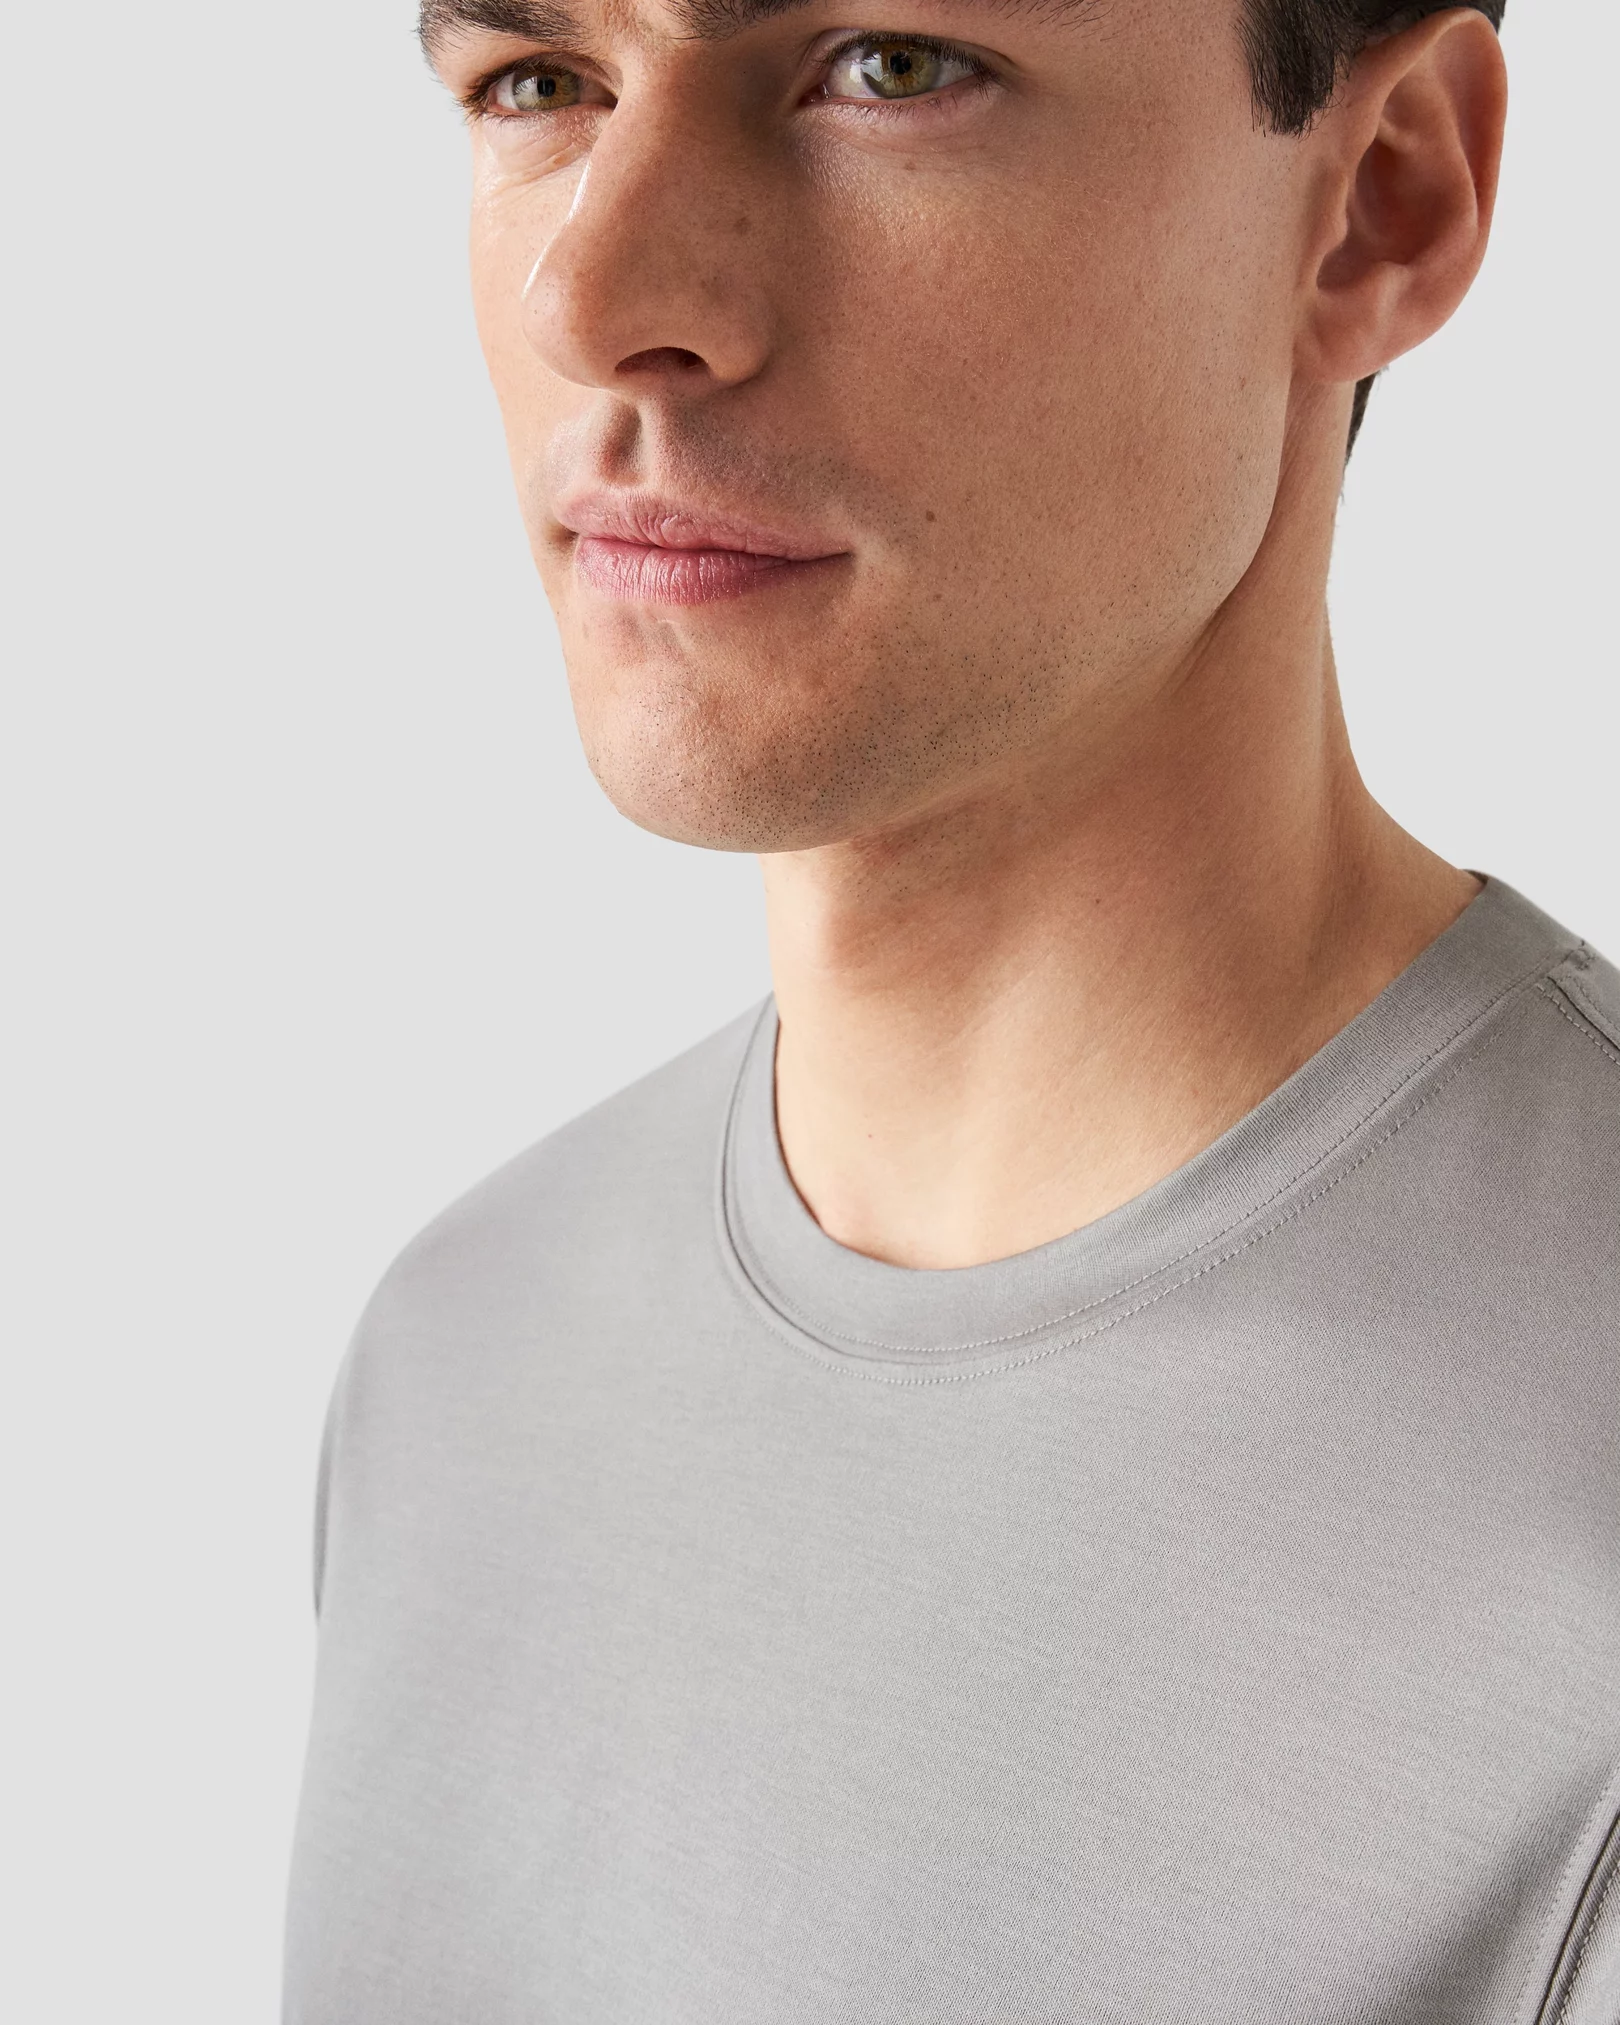 Eton - grey filo di scozia t shirt t shirt